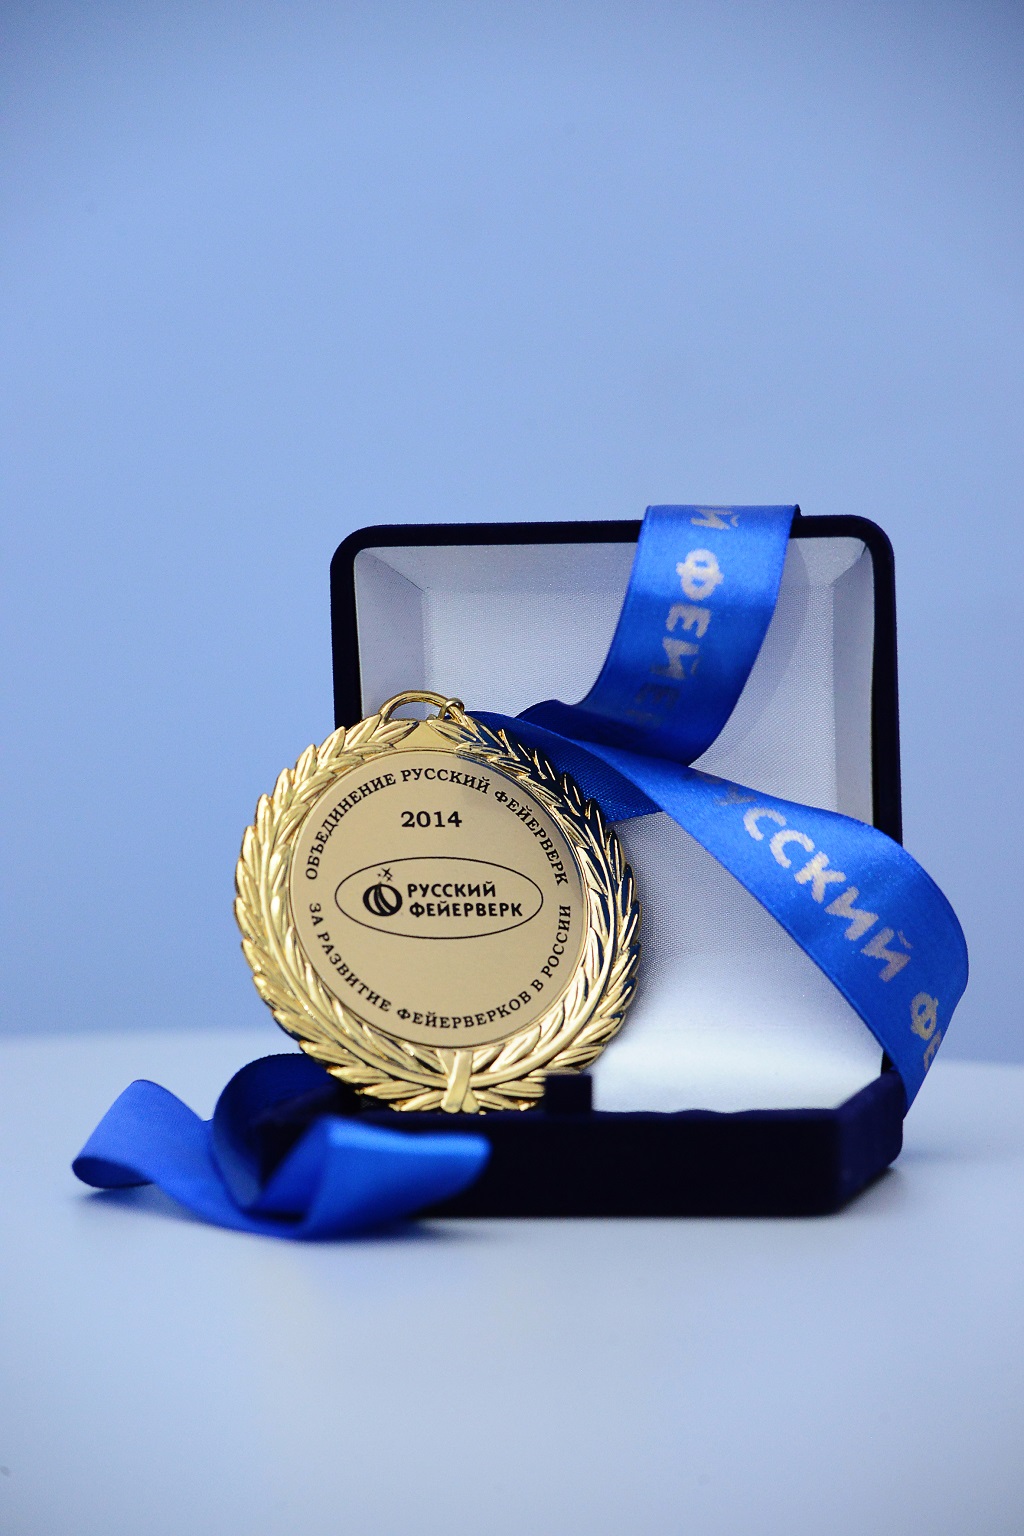 2014 medal